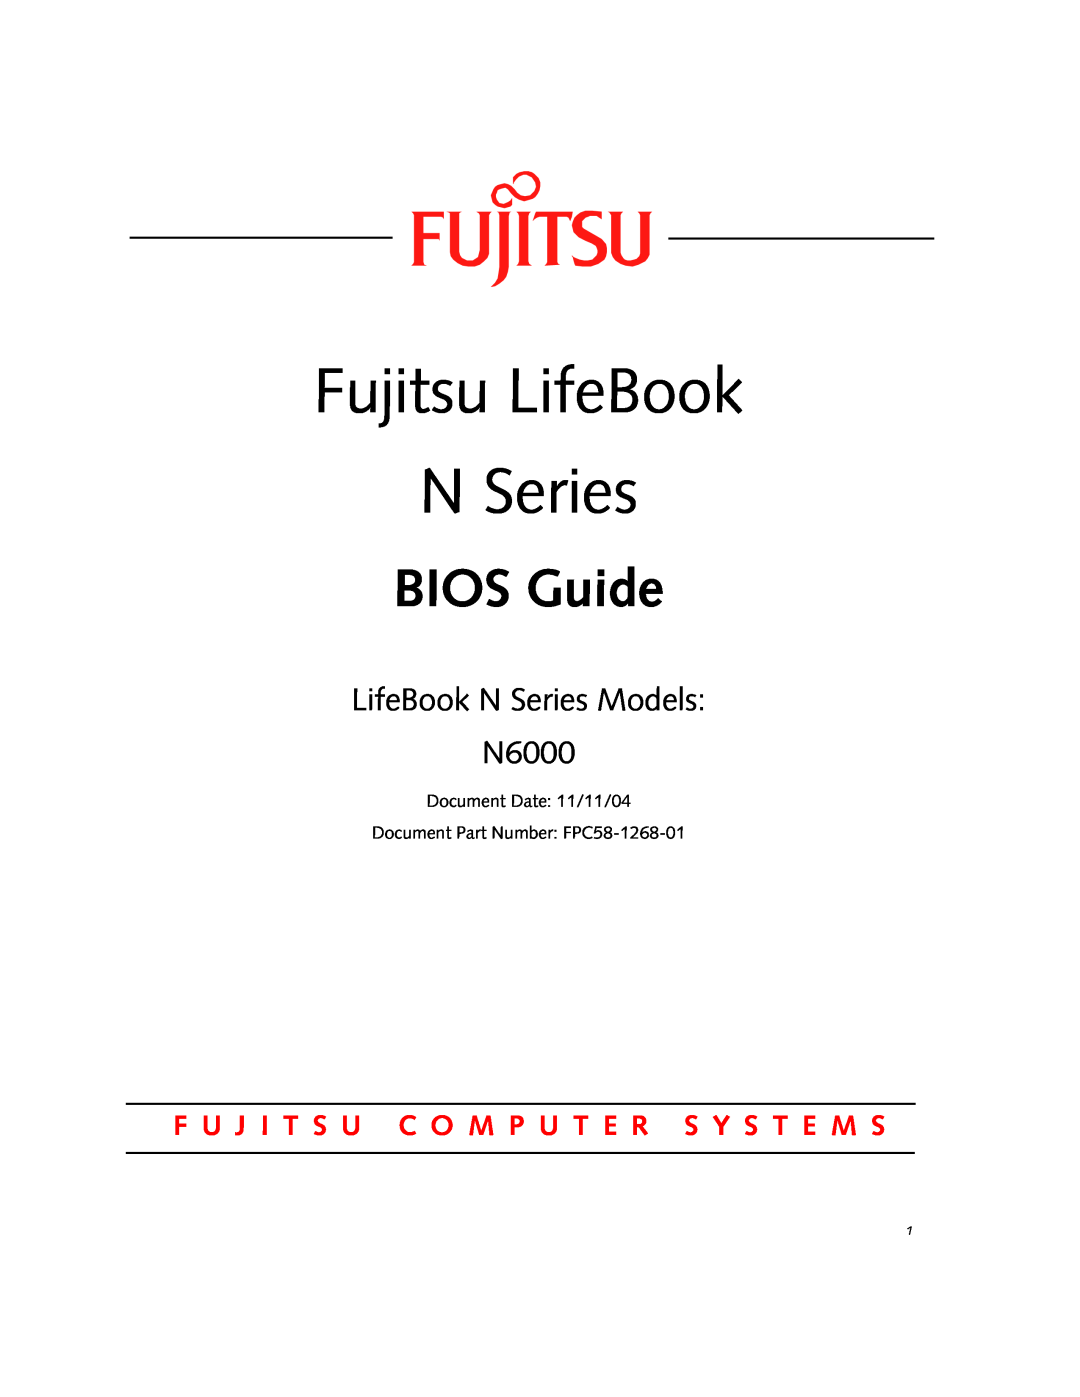 Fujitsu manual Fujitsu LifeBook N Series, BIOS Guide, LifeBook N Series Models N6000 